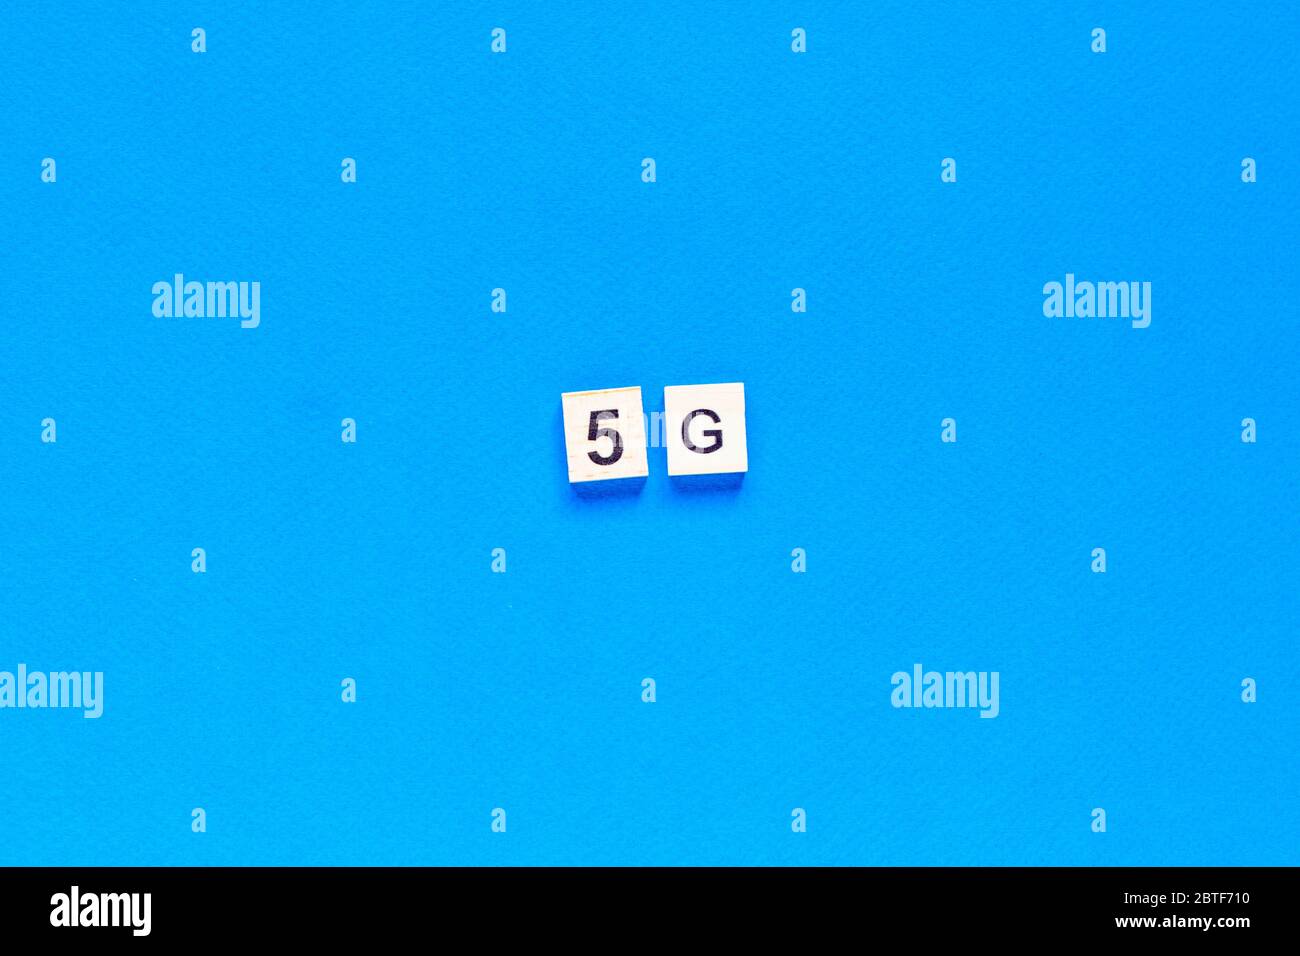 5 G. cinque G, scritte in lettere di legno su sfondo blu. Layout piatto. Rete wireless. Nuova tecnologia. Vista dall'alto. Foto Stock